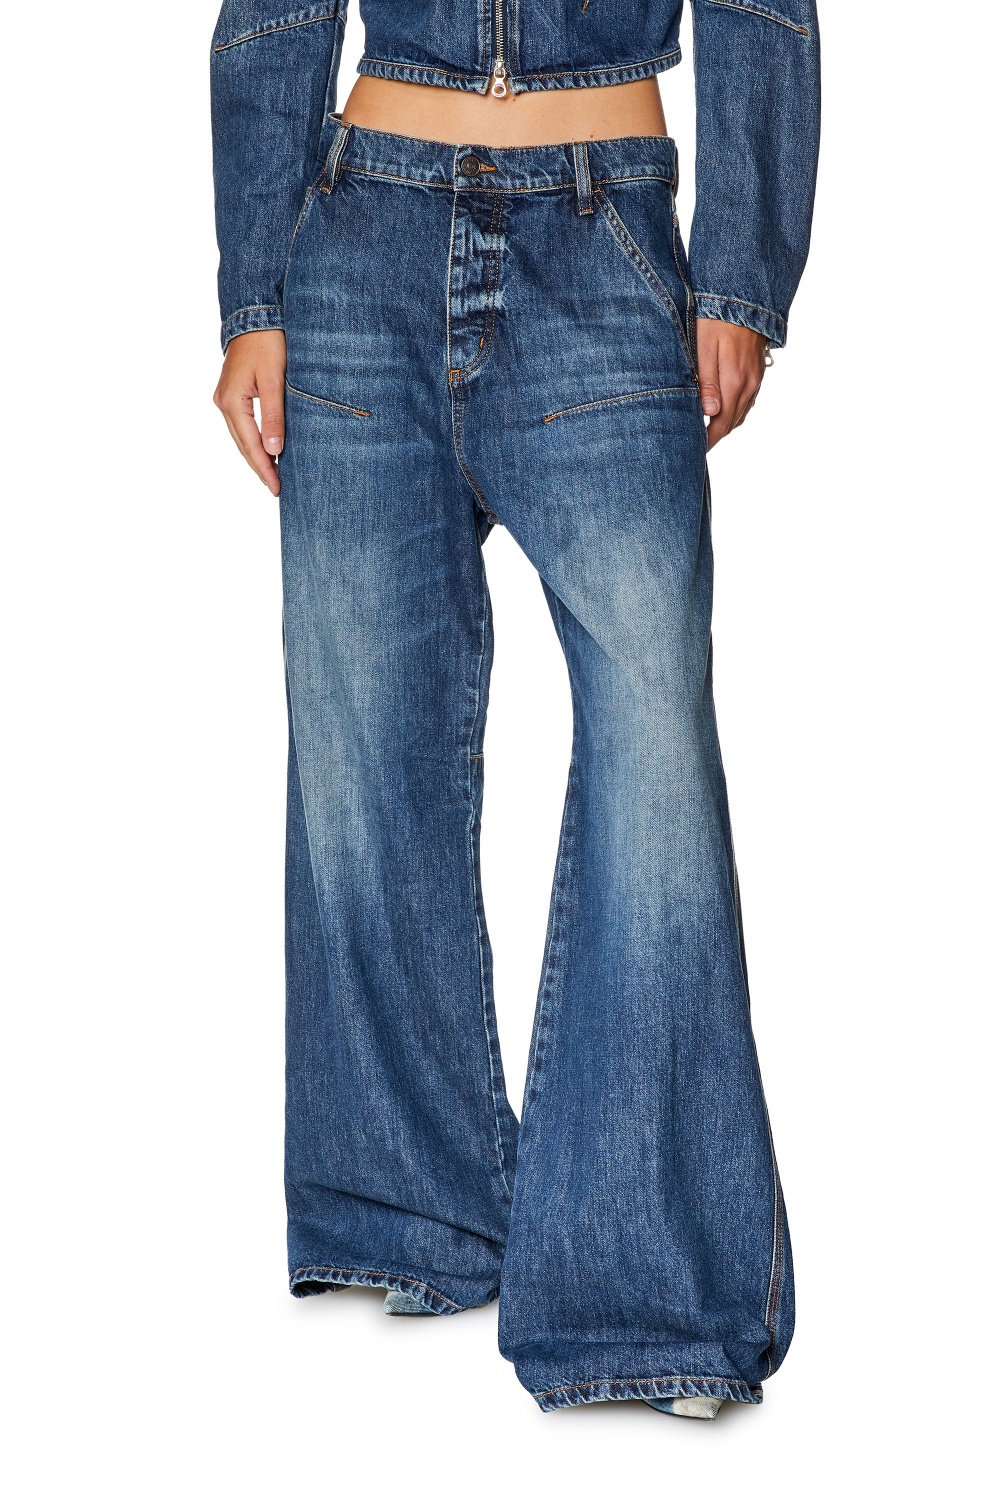 Джинсы Diesel D-Sire-Work-S Jeans 26 размер